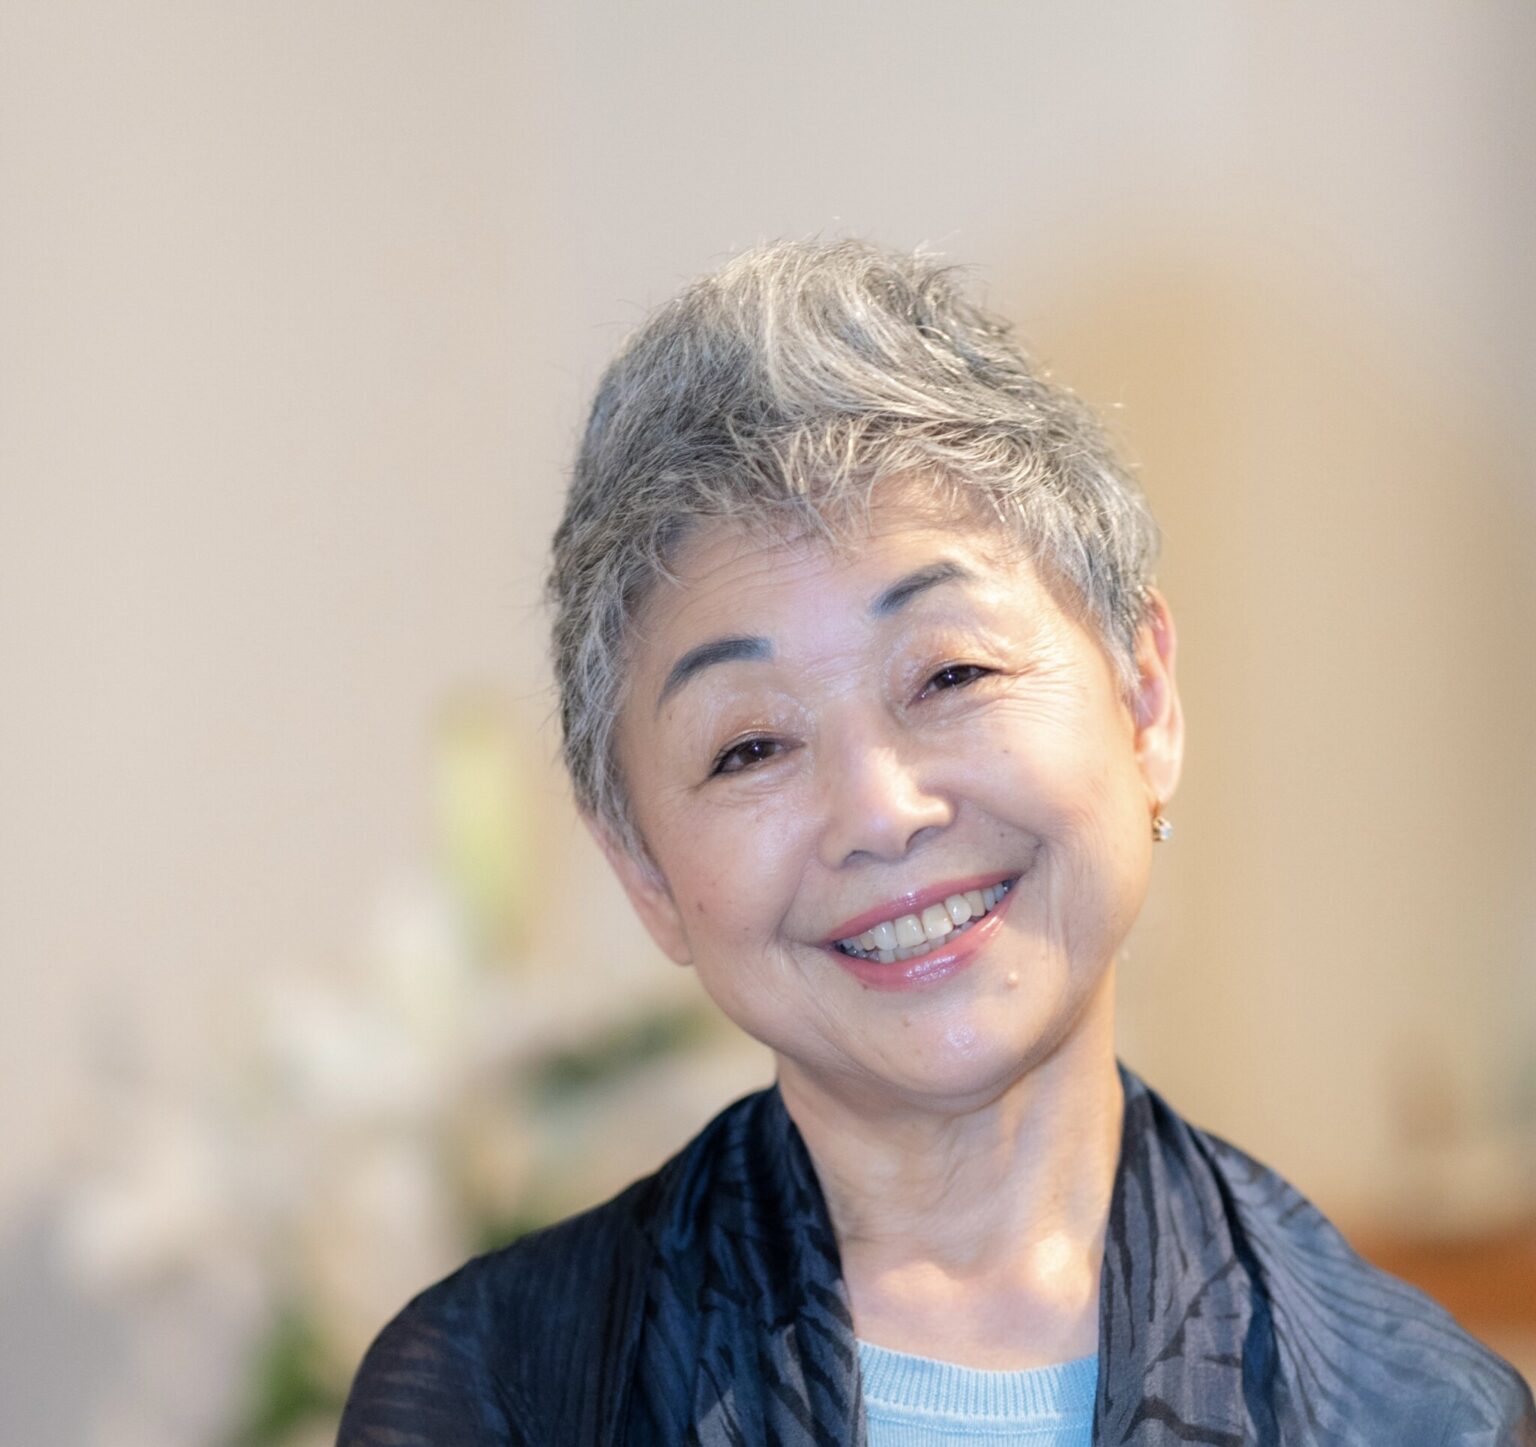 渡邊智惠子さん。